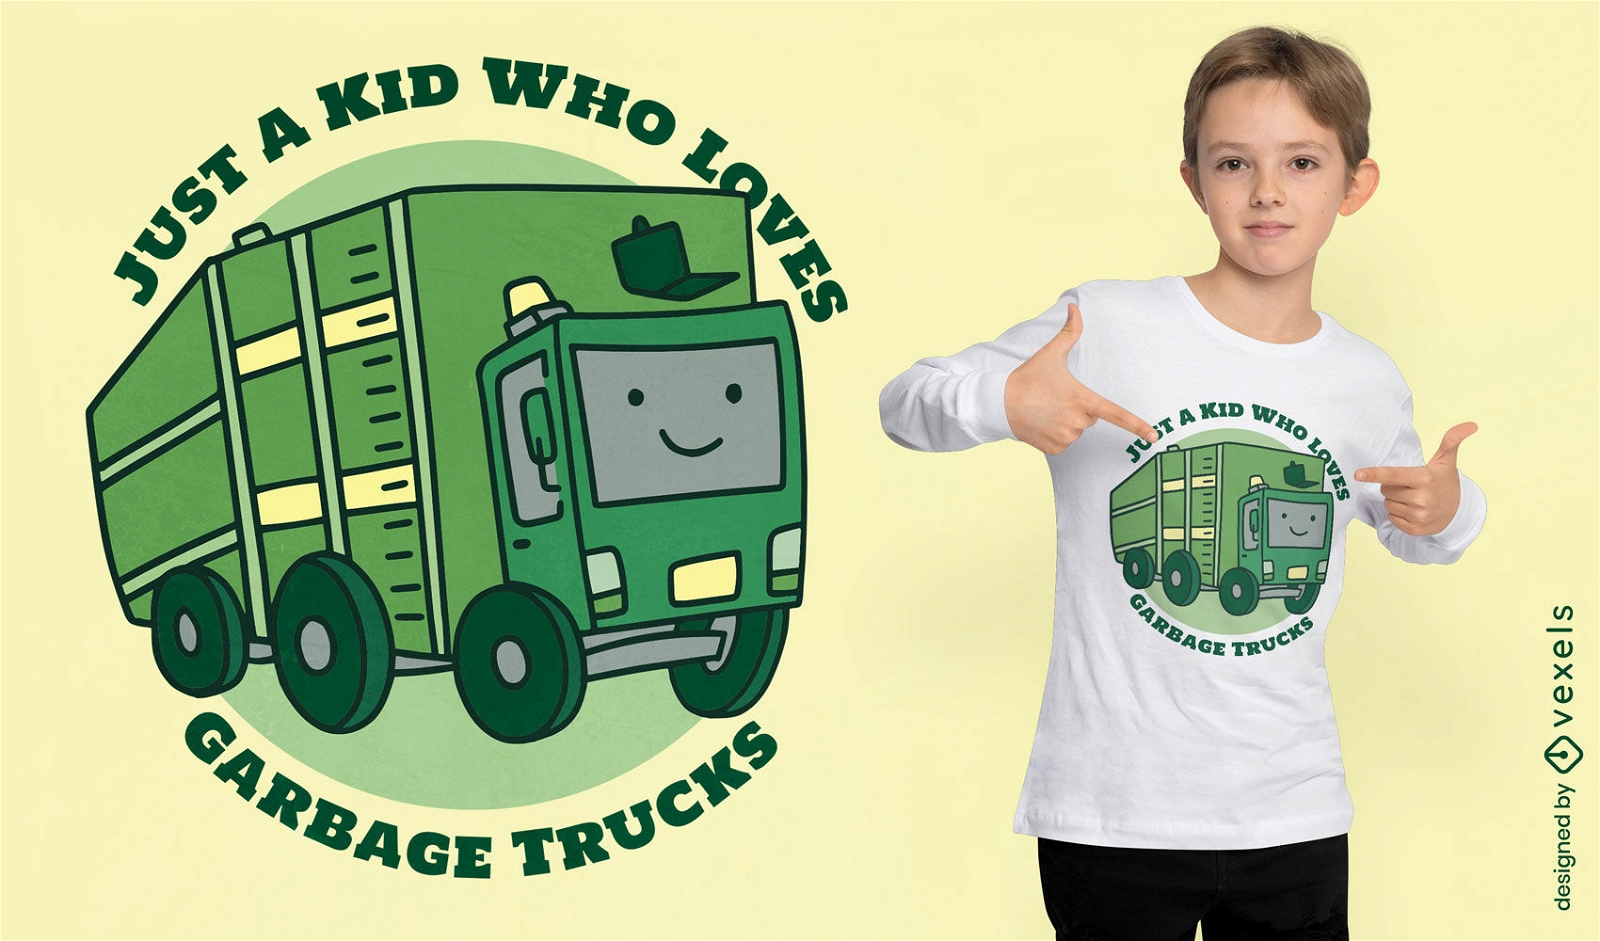 Garbage truck children t-shirt design